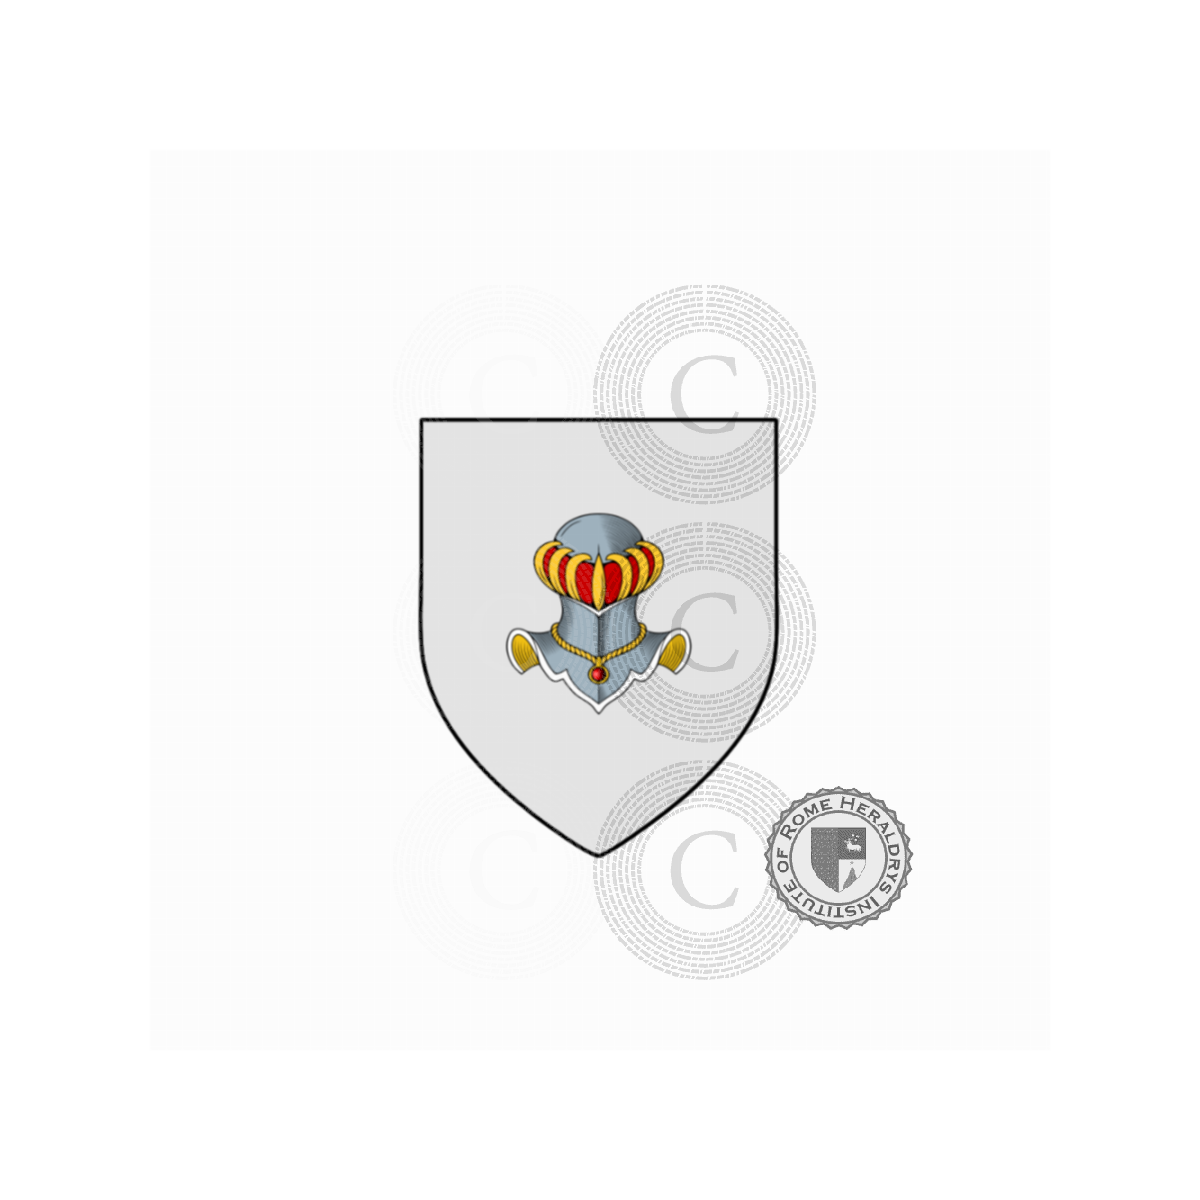 Coat of arms of family Pignati